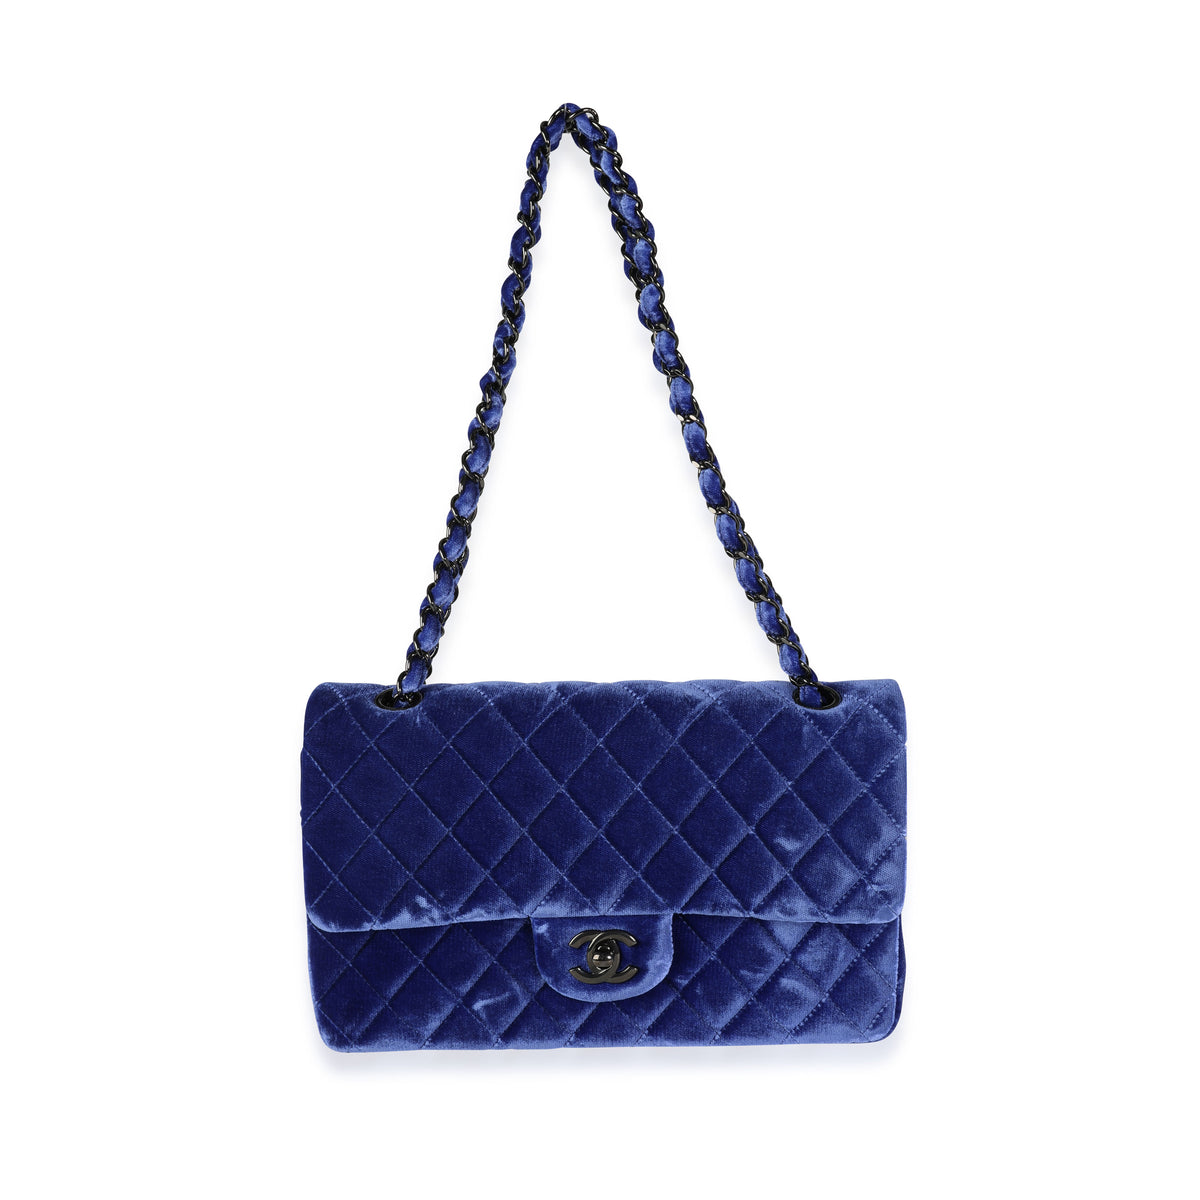 Timeless/classique velvet crossbody bag Chanel Blue in Velvet